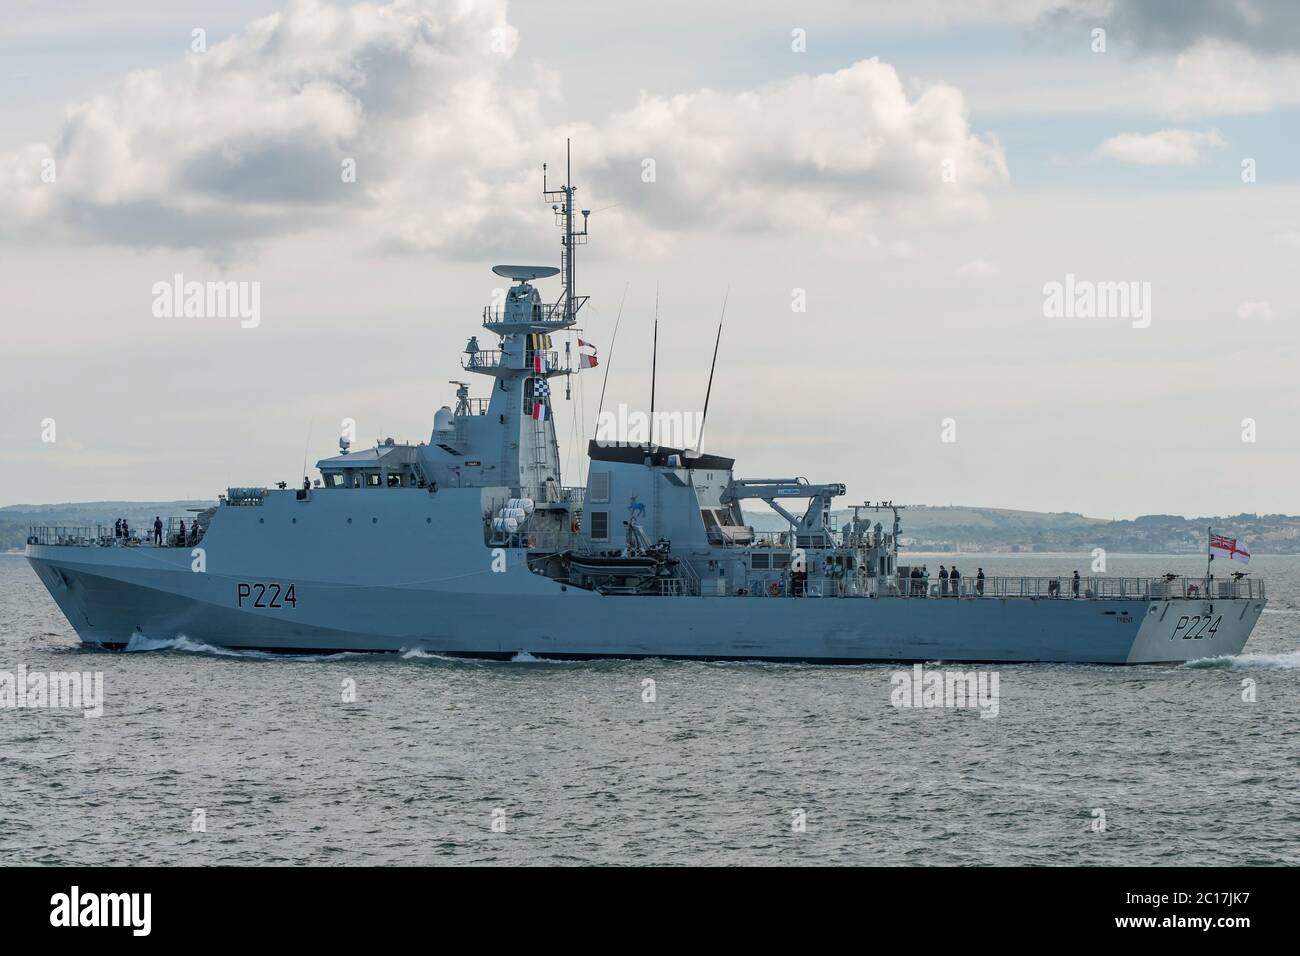 Le navire de patrouille offshore de la Royal Navy, HMS Trent (P224), a quitté Portsmouth (Royaume-Uni) dans l'après-midi du dimanche 14 juin 2020 pour effectuer des patrouilles dans tout le Royaume-Uni. Banque D'Images